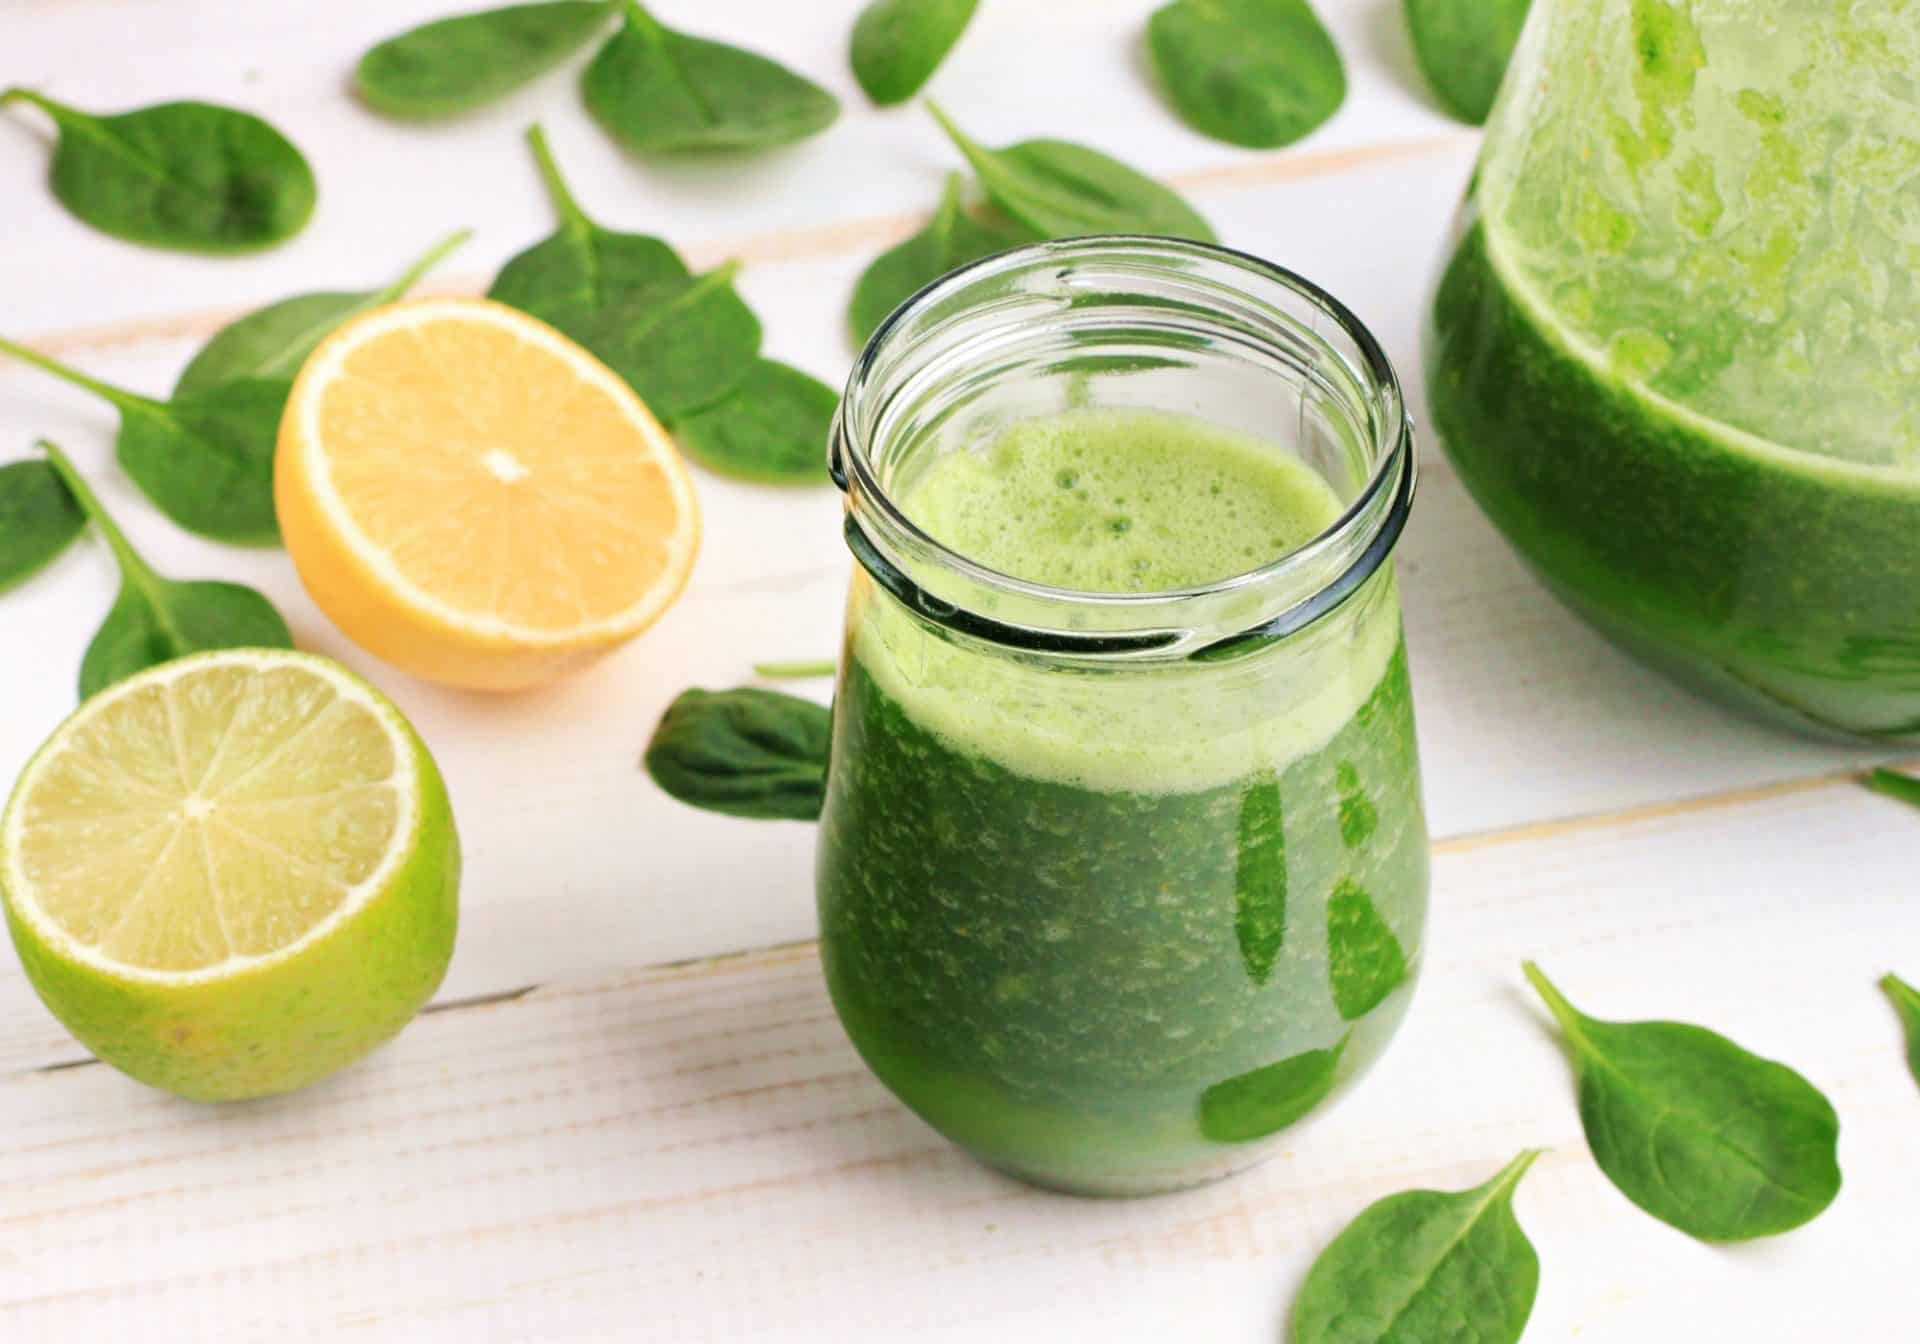 Delicious green juice